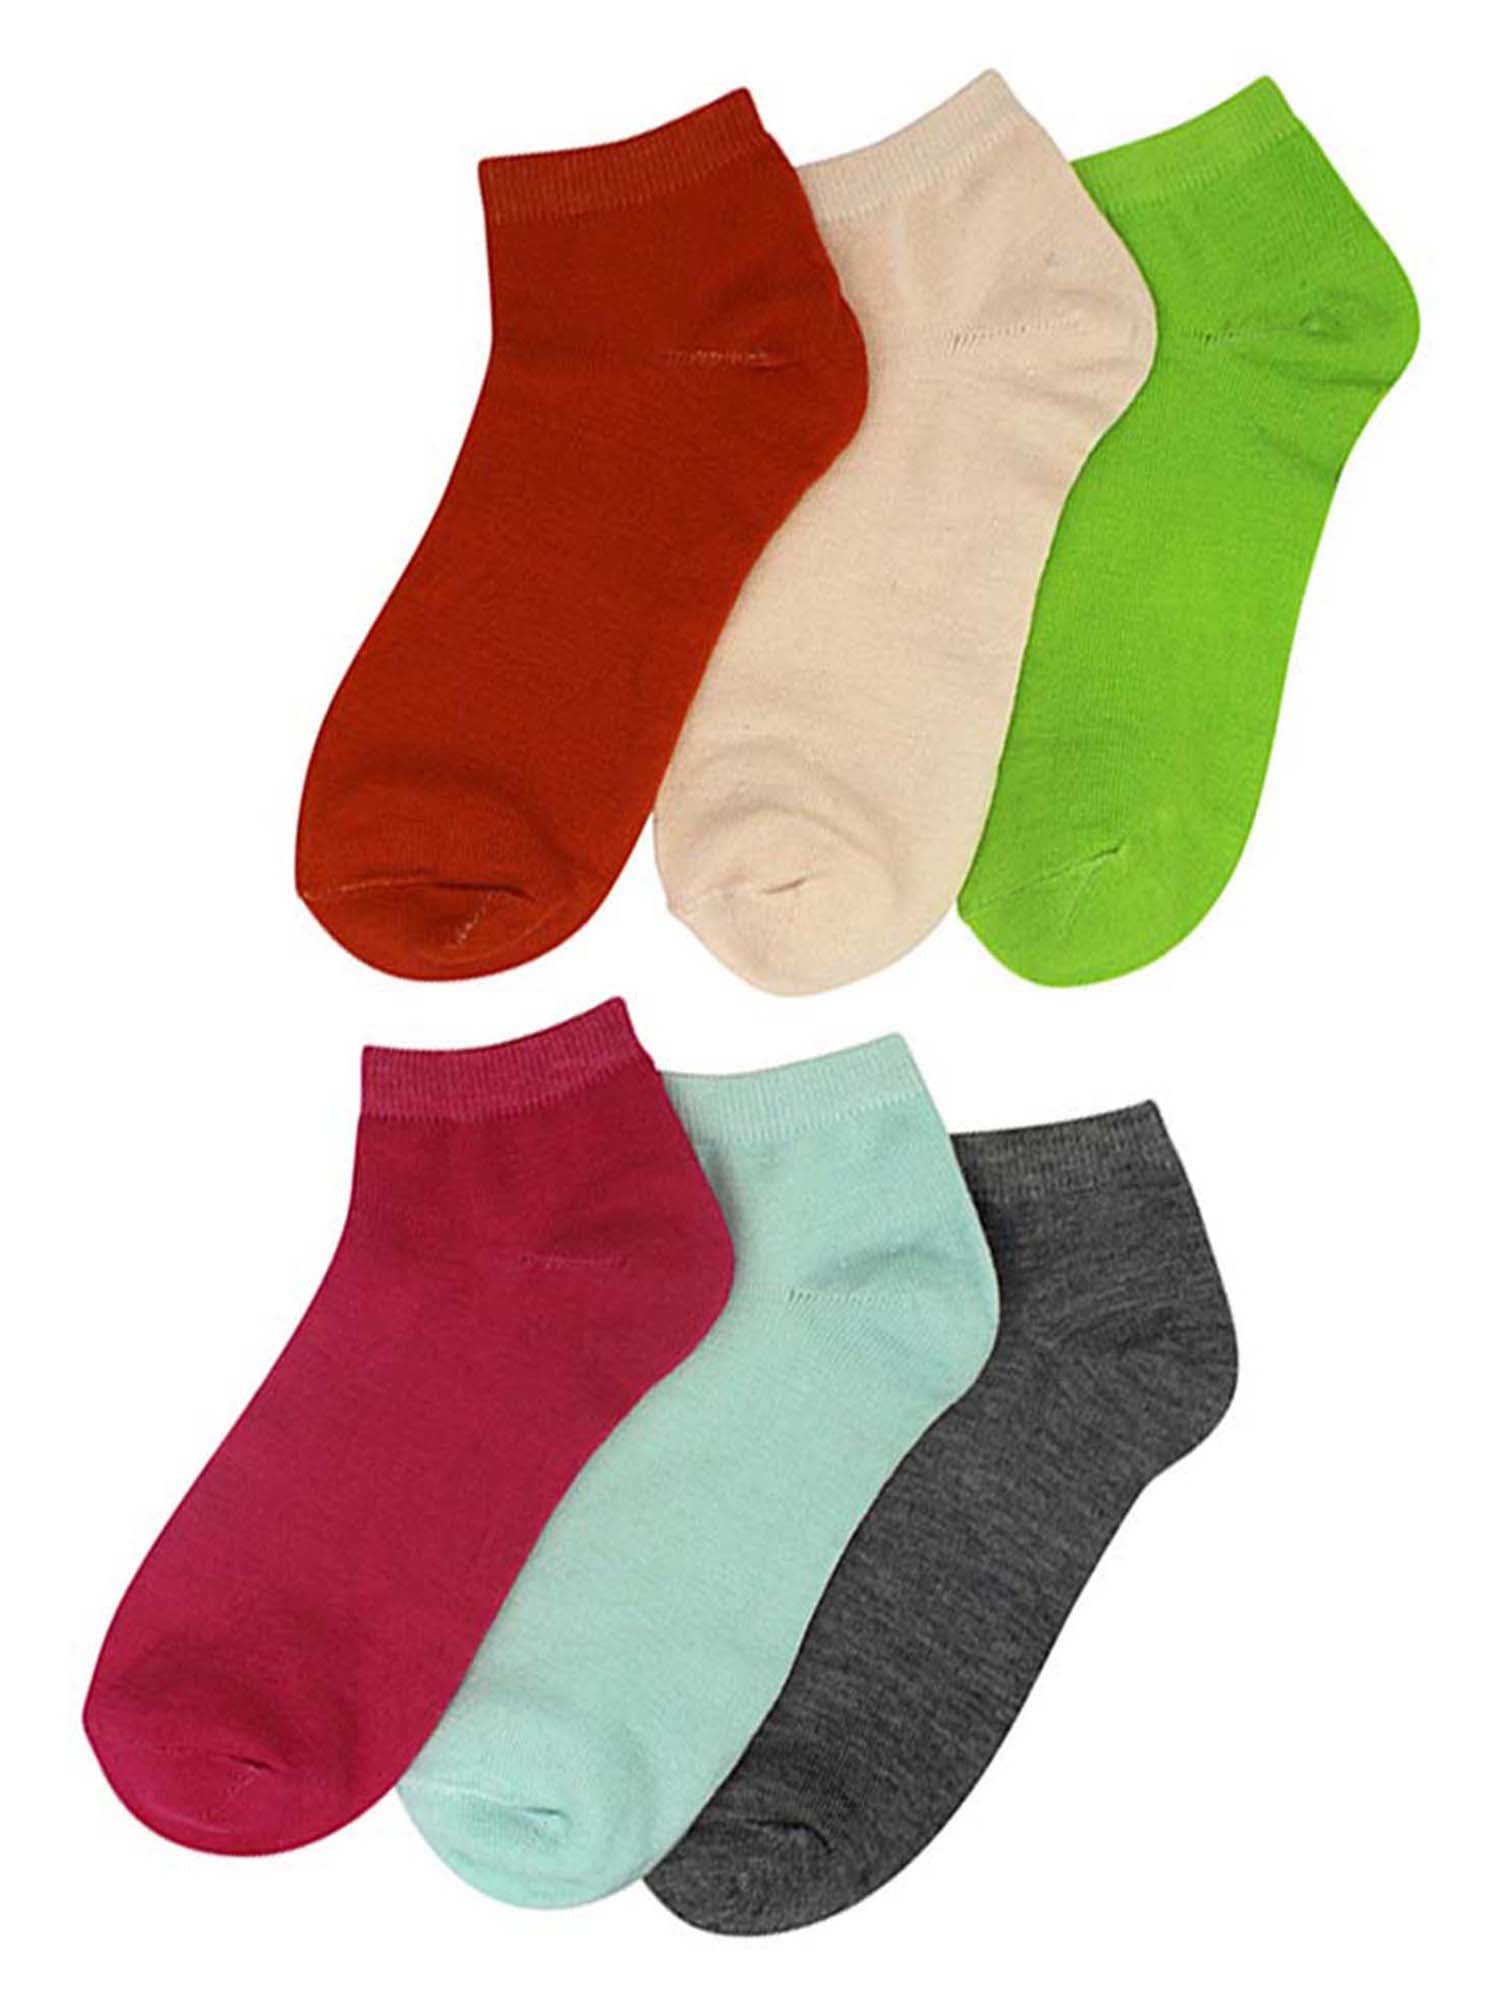 Women's Girl Solid Plain Gray Ankle Quarter Low Cut Socks School Wholesale Lots 